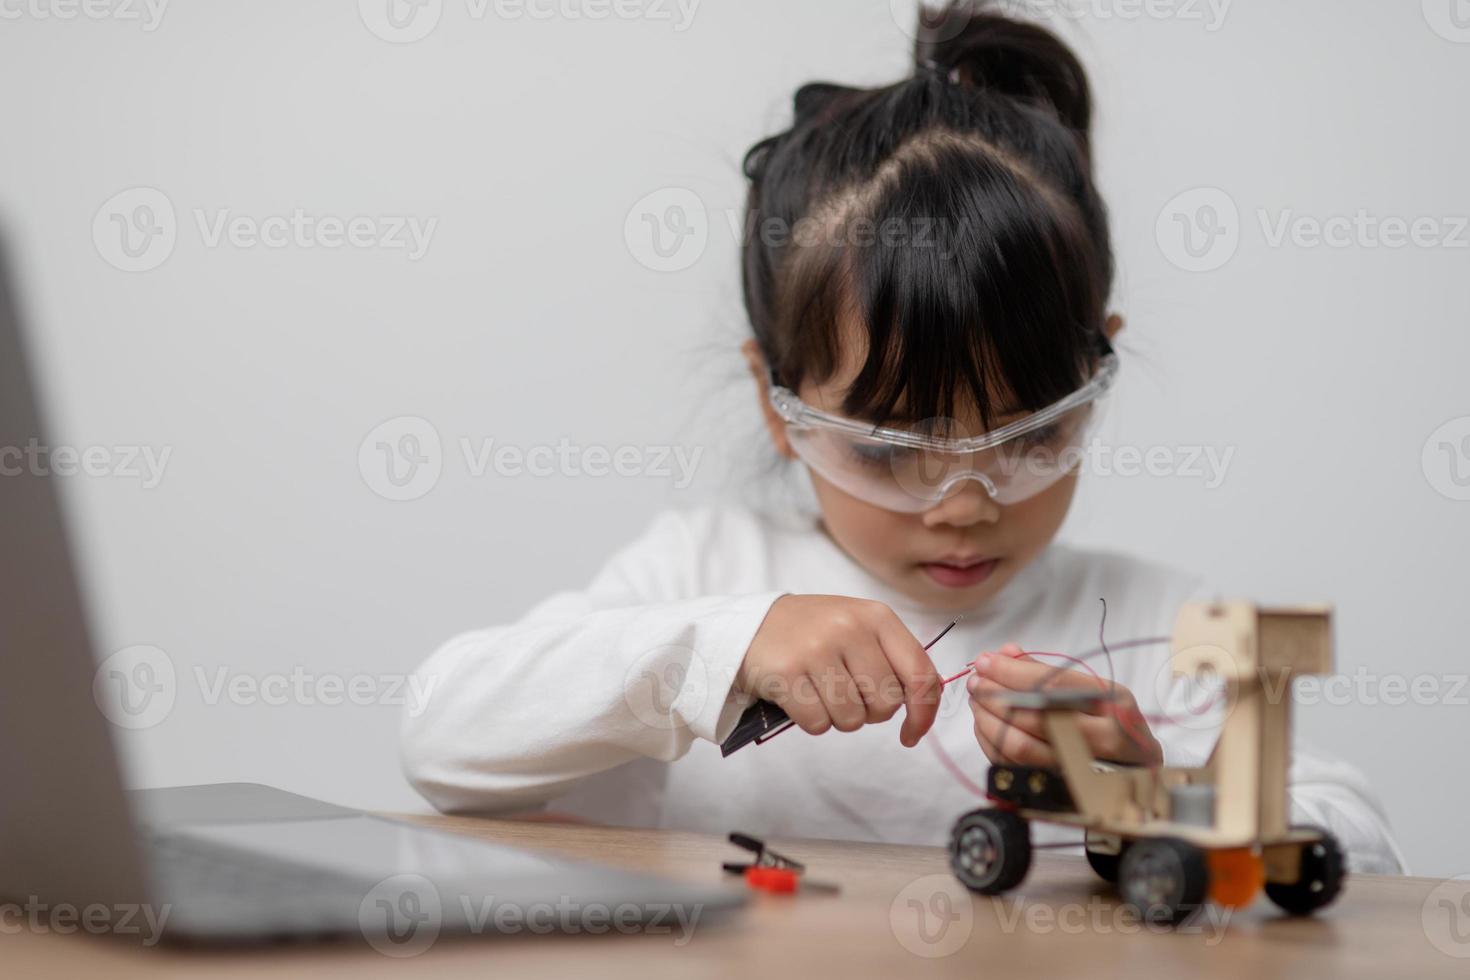 los estudiantes de asia aprenden en casa a codificar autos robot y cables de tableros electrónicos en tallo, vapor, ingeniería matemática, ciencia, tecnología, código de computadora en robótica para el concepto de niños. foto